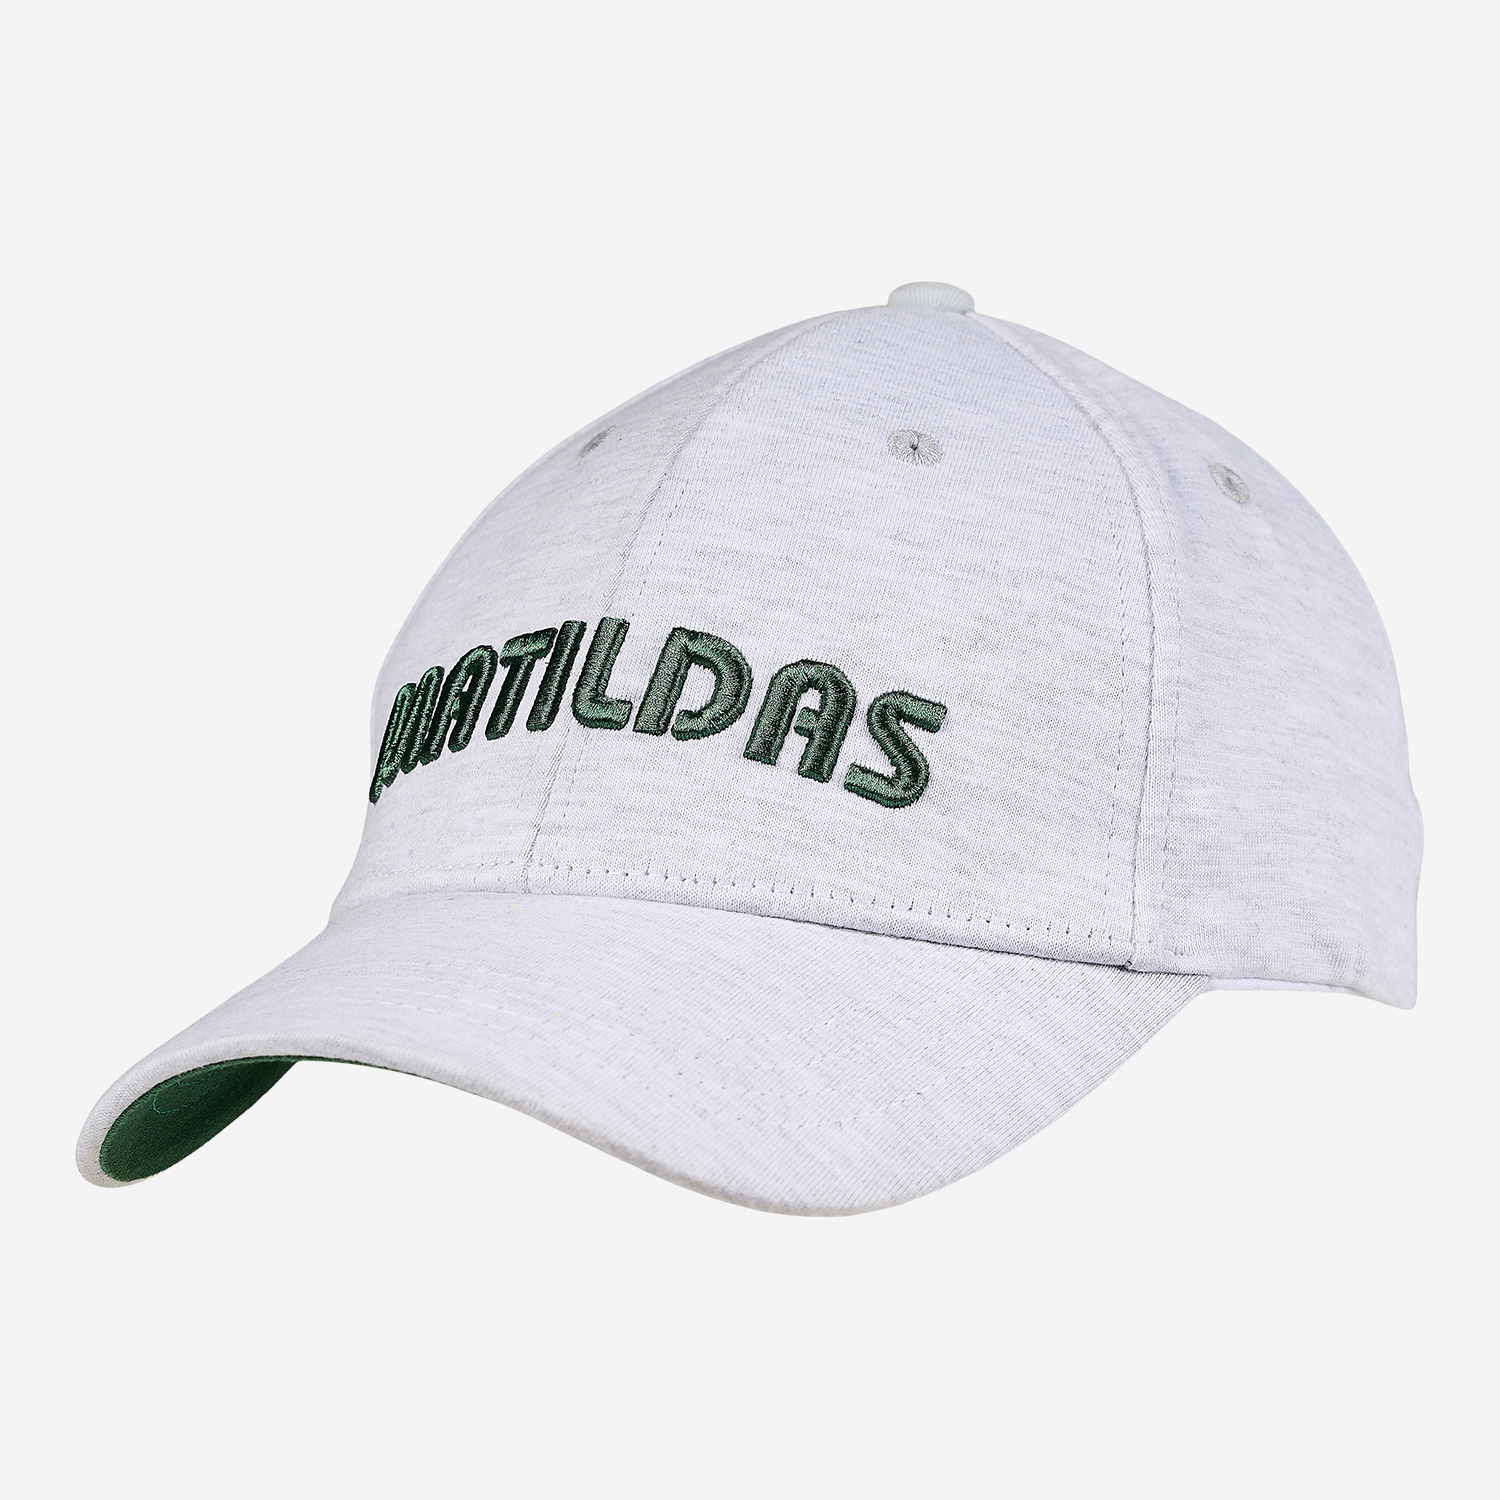 Matildas Leaf cap 2